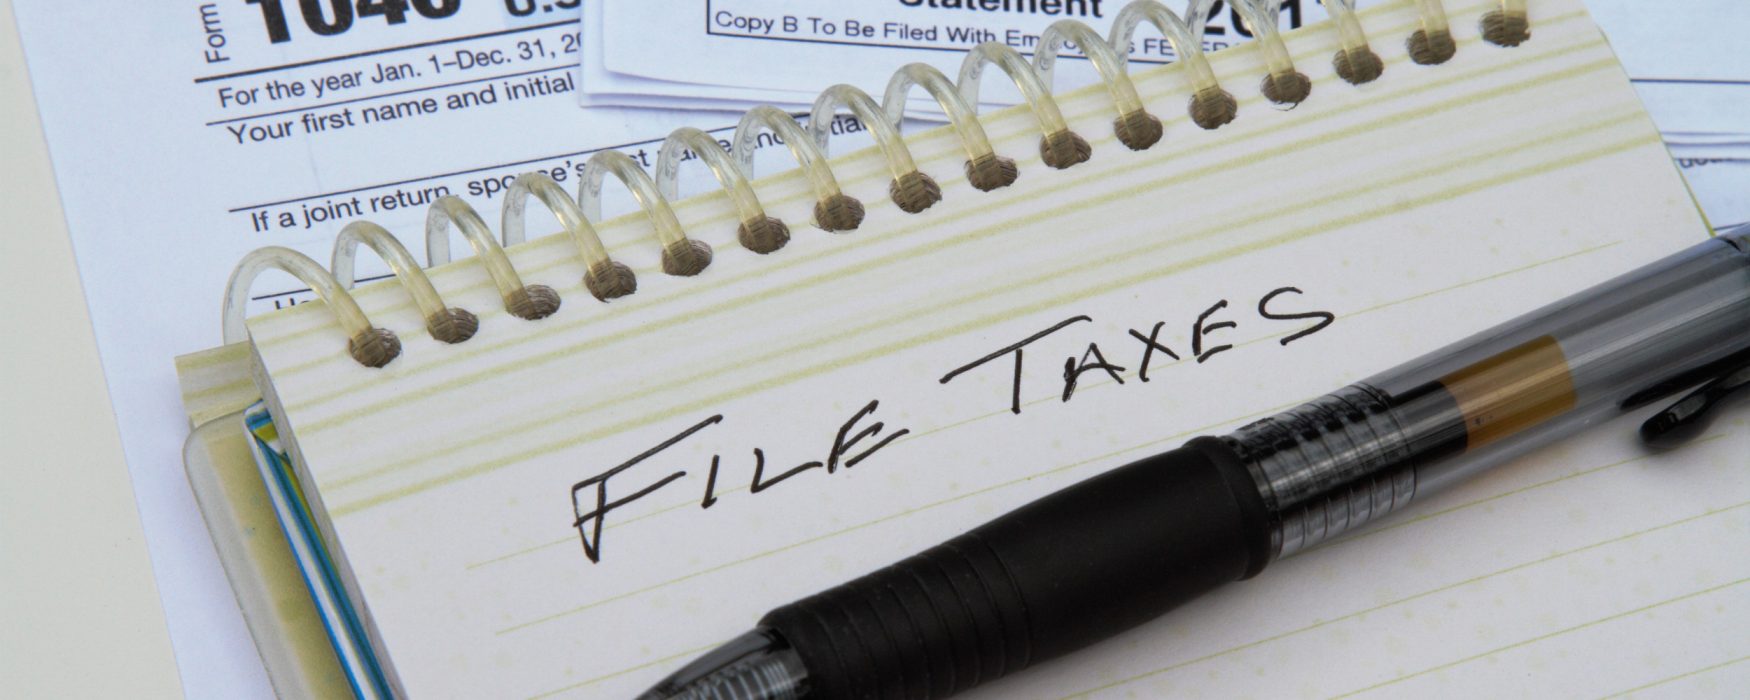 File taxes